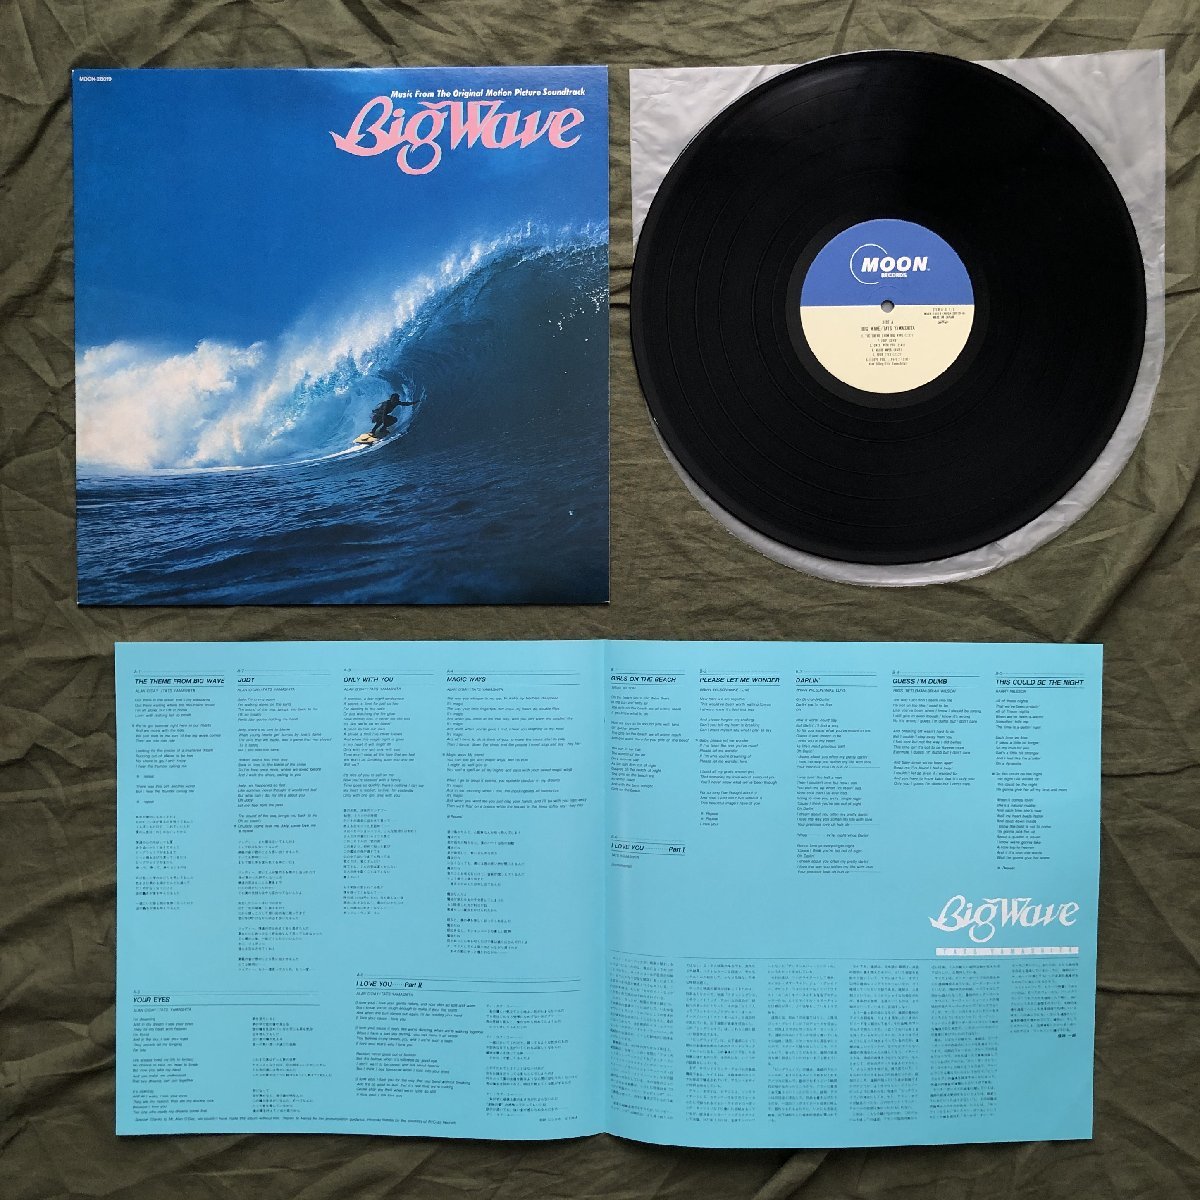 傷なし美盤 1984年オリジナルリリース盤 山下達郎 Tatsuro Yamashita LPレコード ビッグ・ウェイブ Big Wave Original Sound Track_画像5